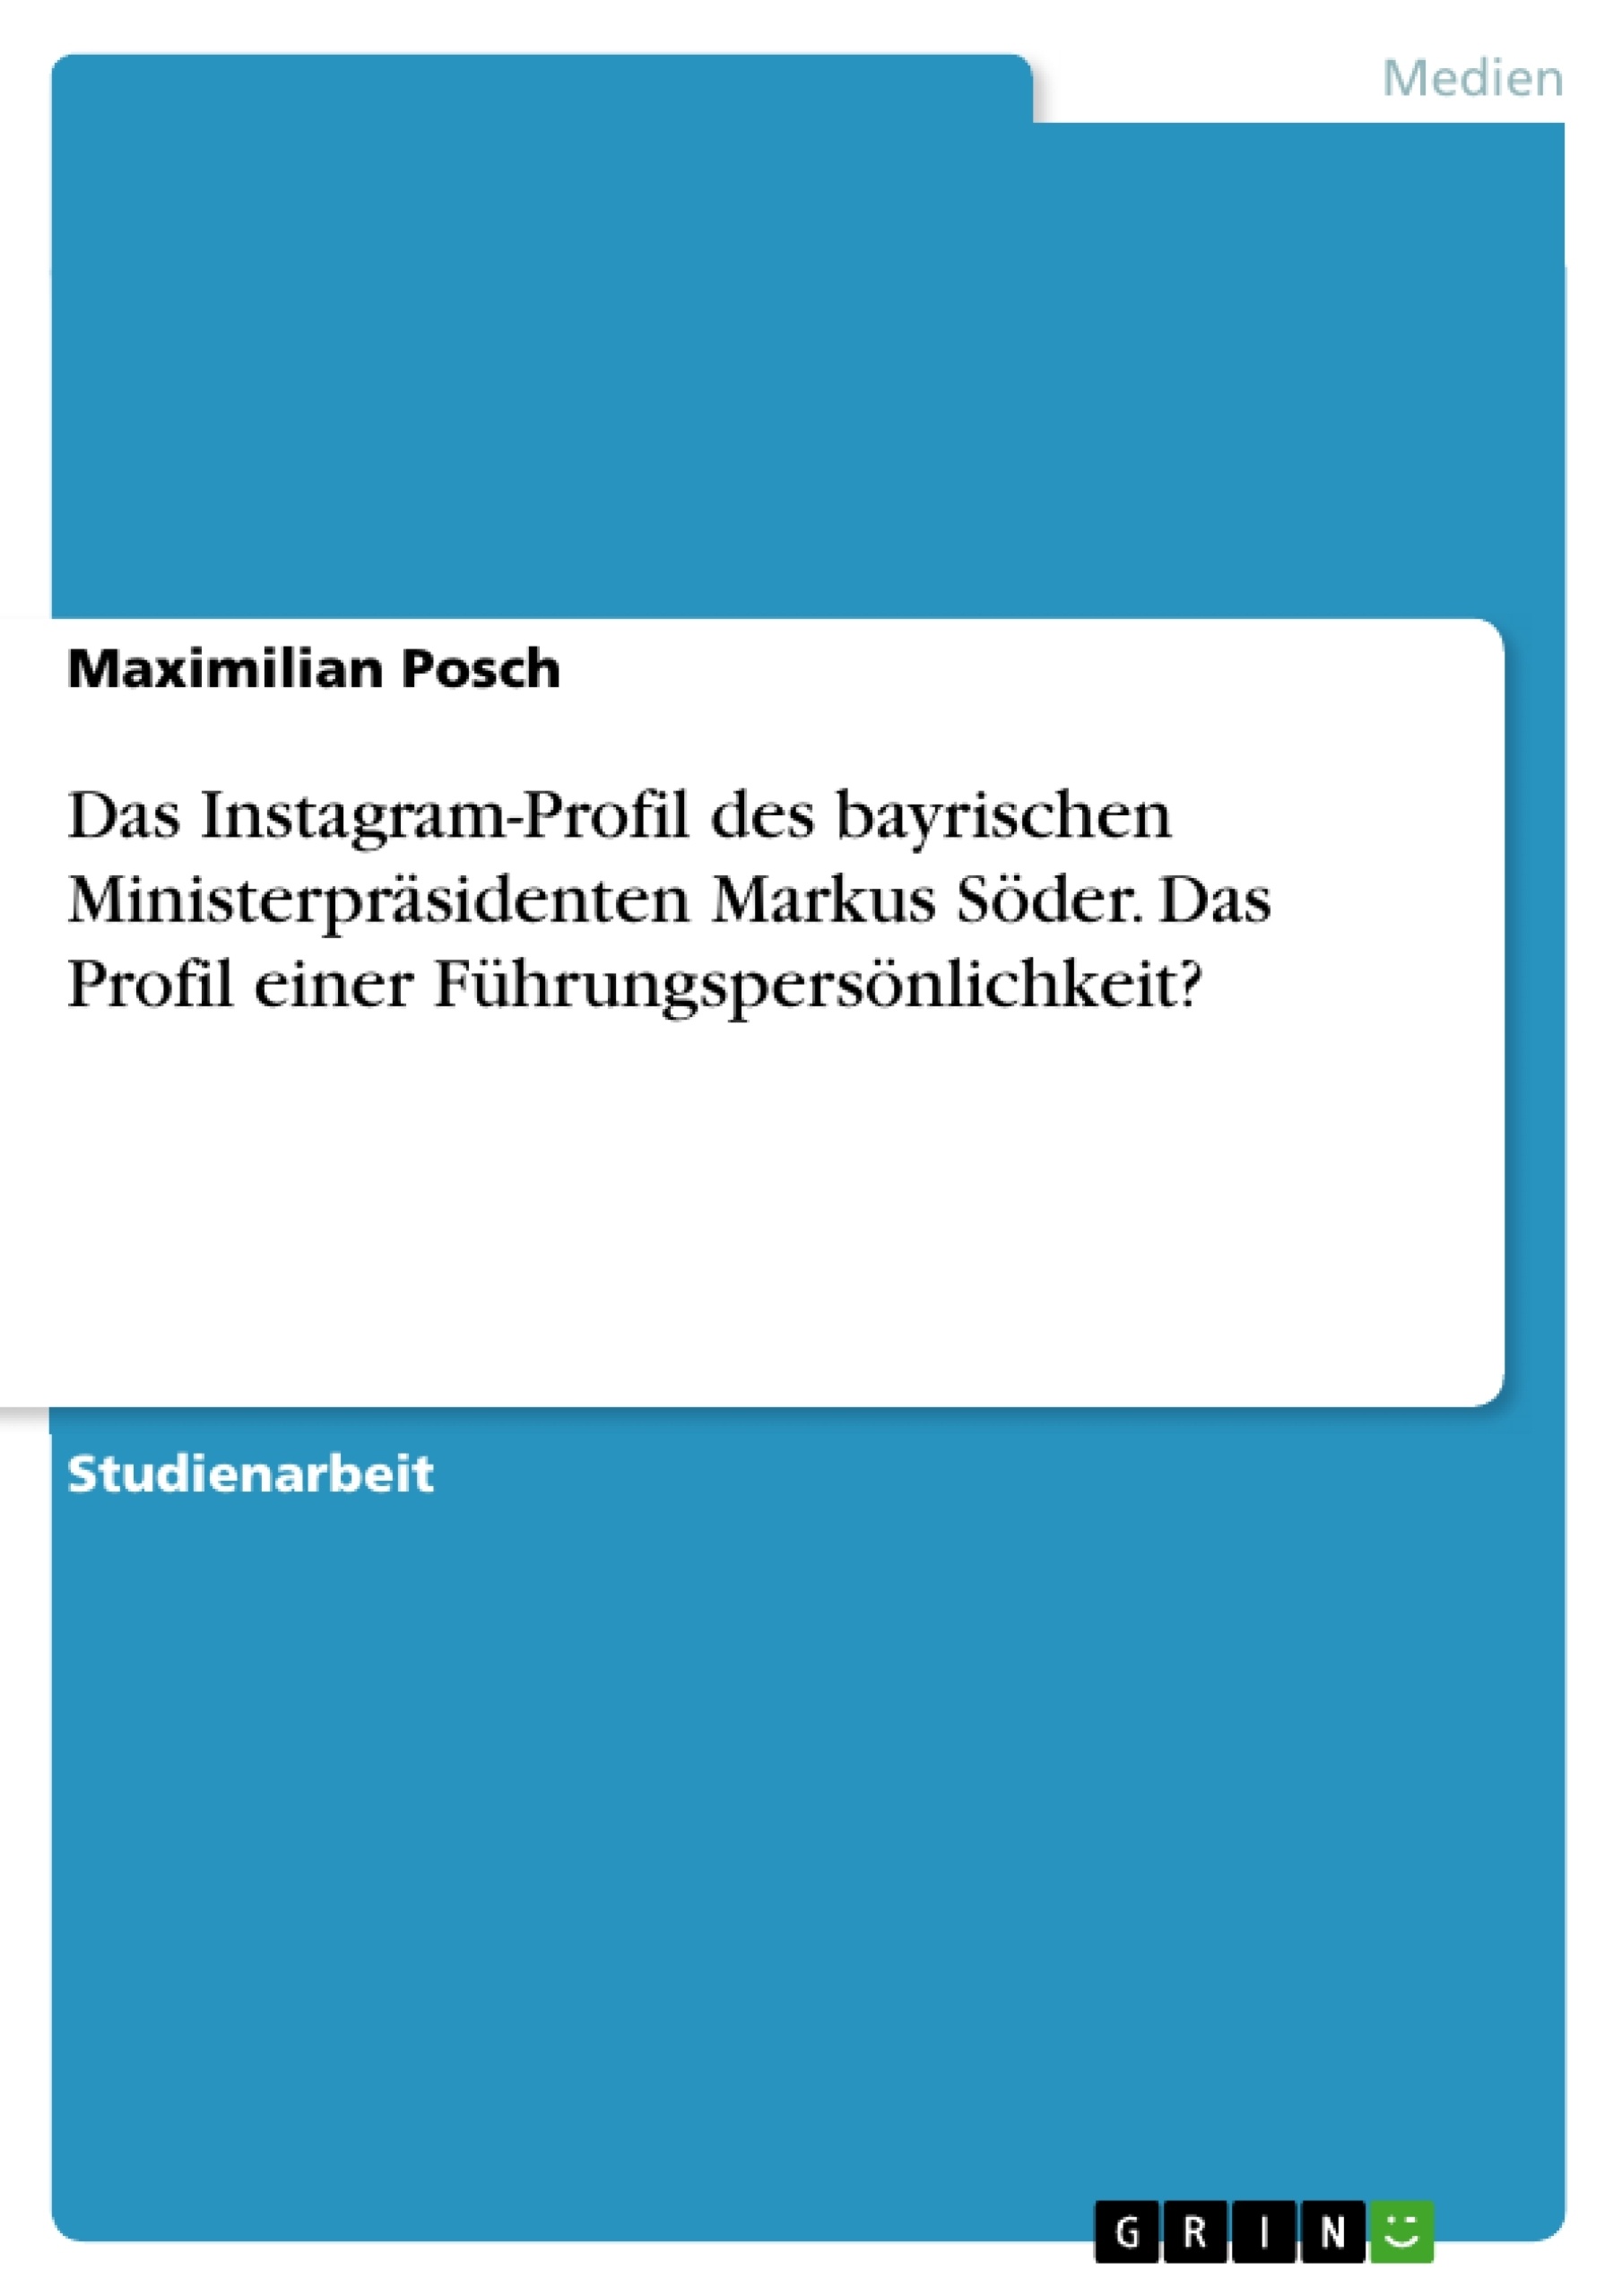 Titre: Das Instagram-Profil des bayrischen Ministerpräsidenten Markus Söder. Das Profil einer Führungspersönlichkeit?